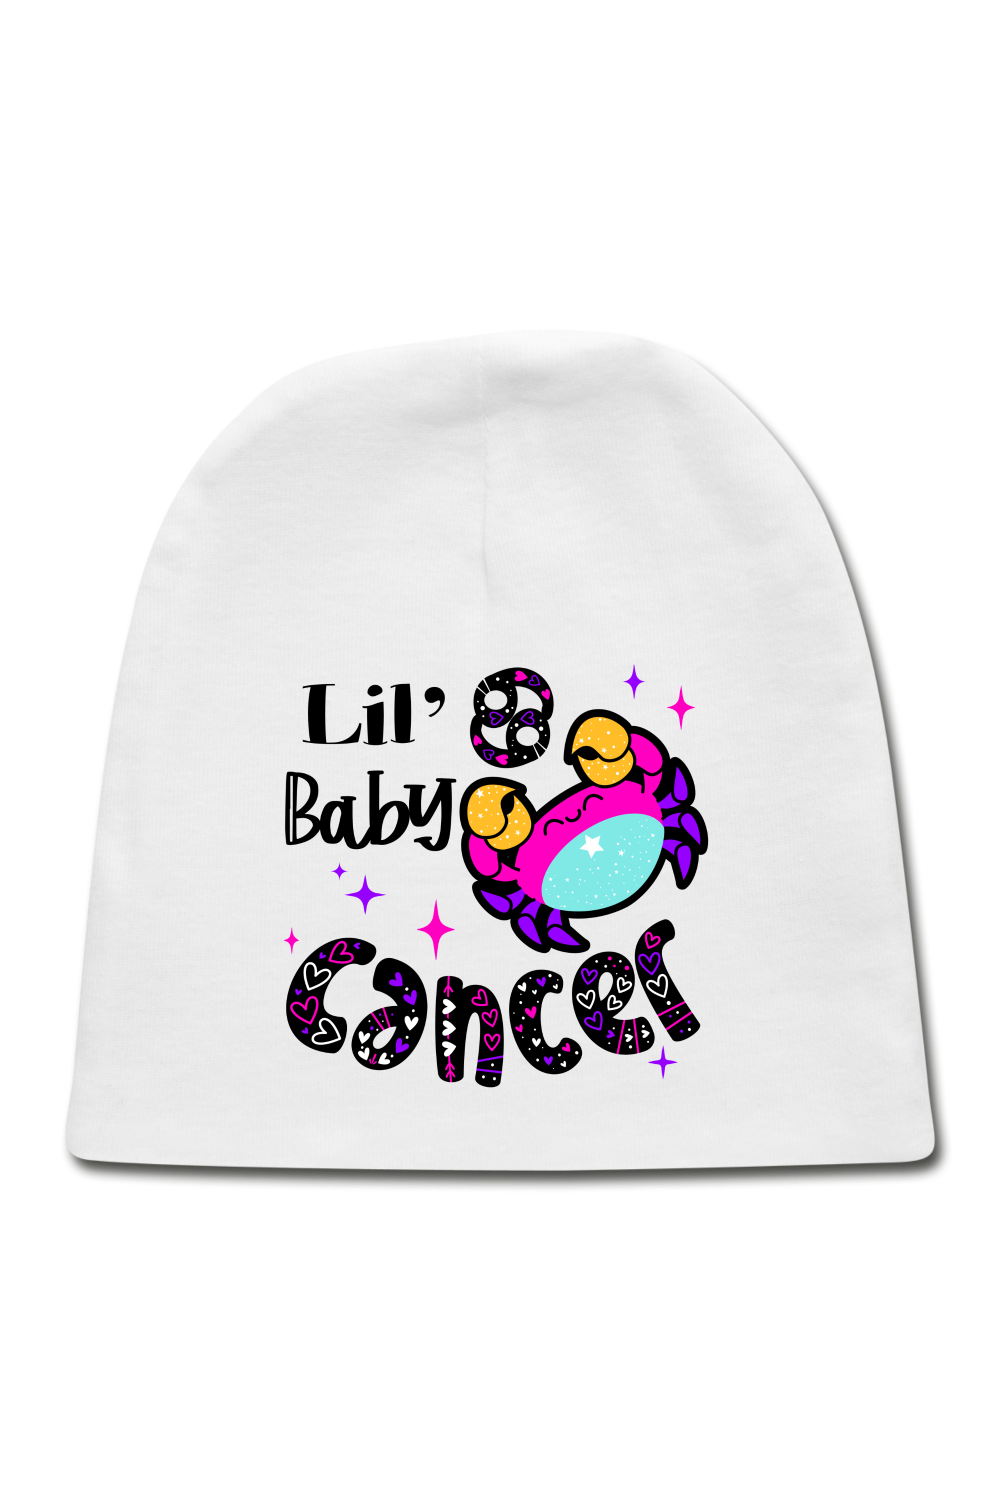 Unisex Baby Cancer White Cap - NicholesGifts.online